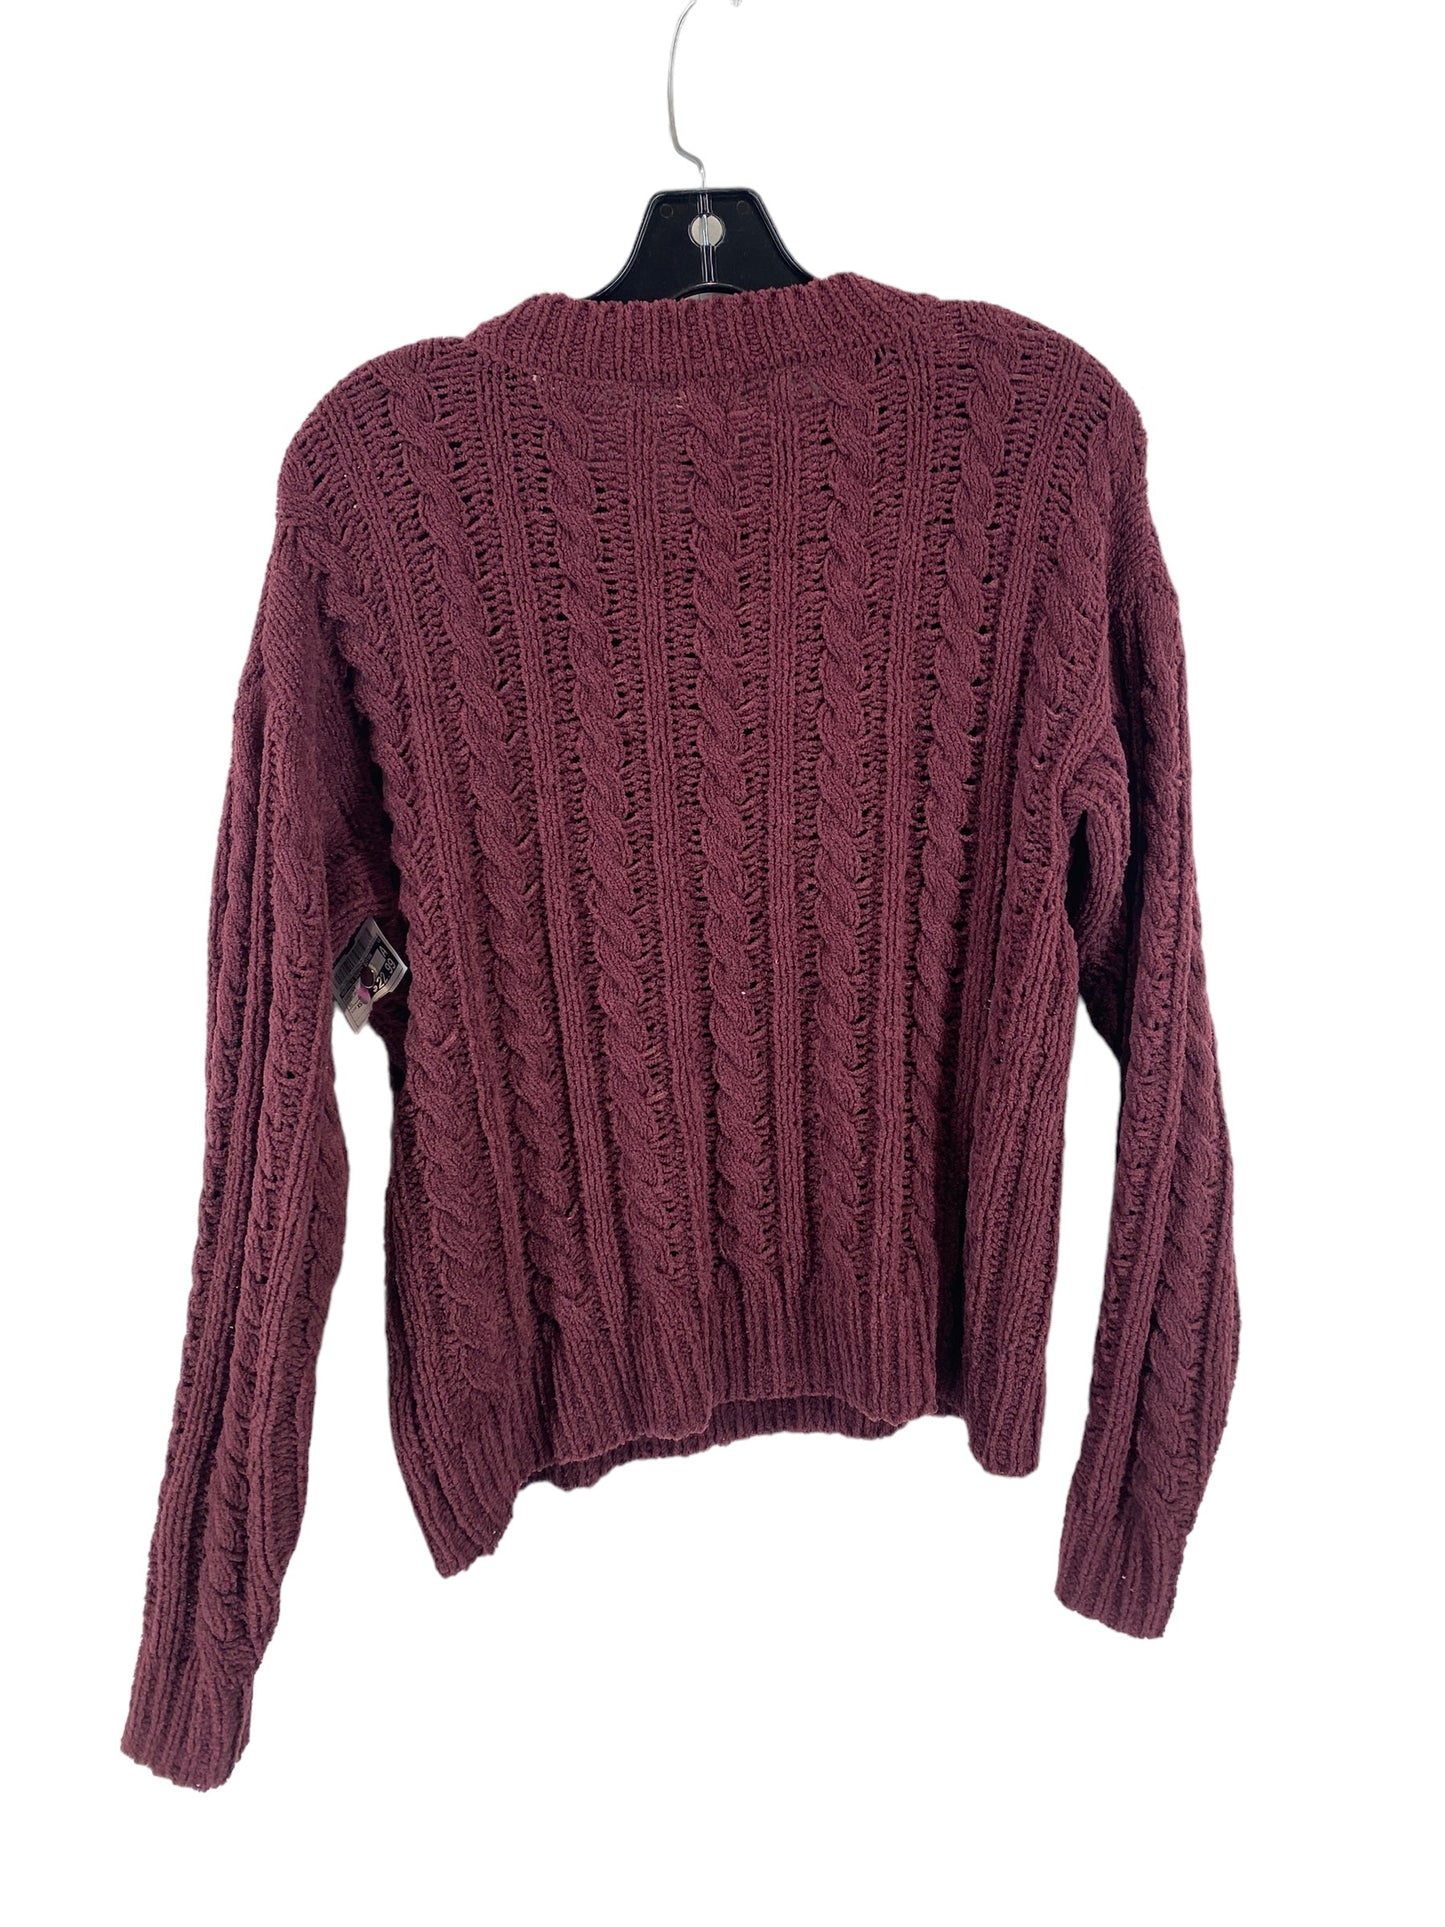 Sweater By Buffalo David Bitton  Size: Xs